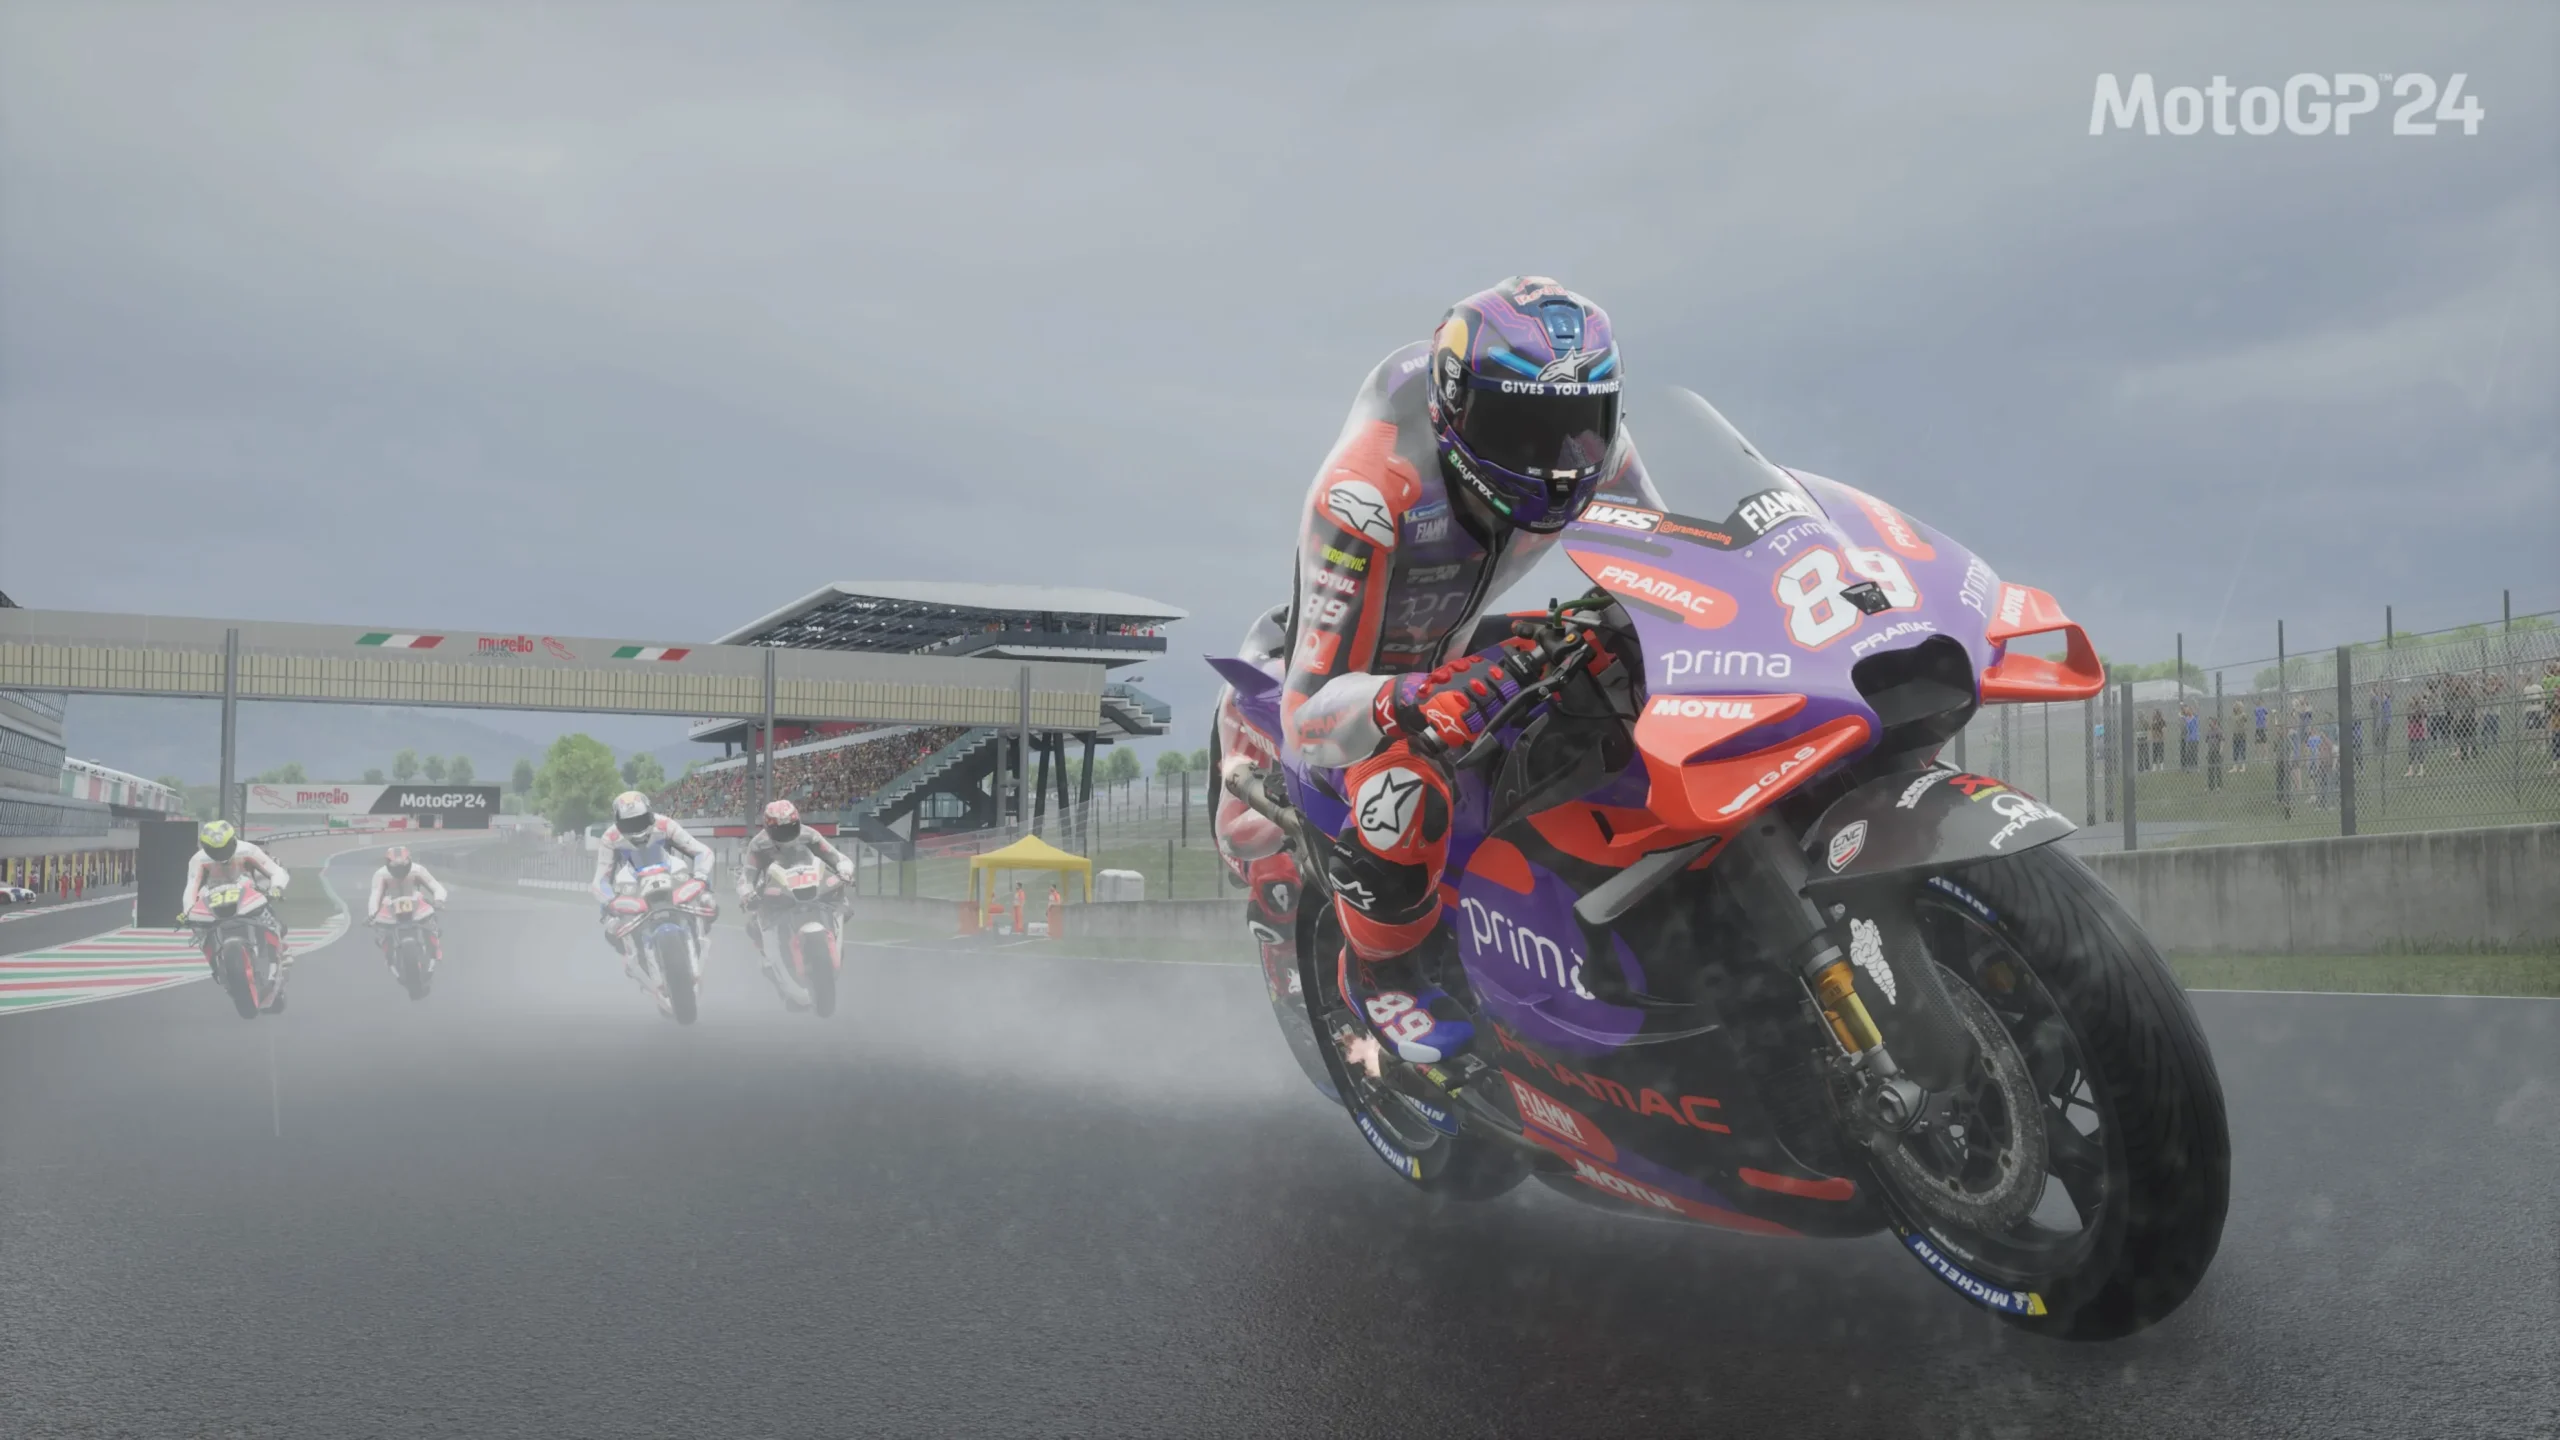 Análisis MotoGP 24 en PS5 - Modo foto